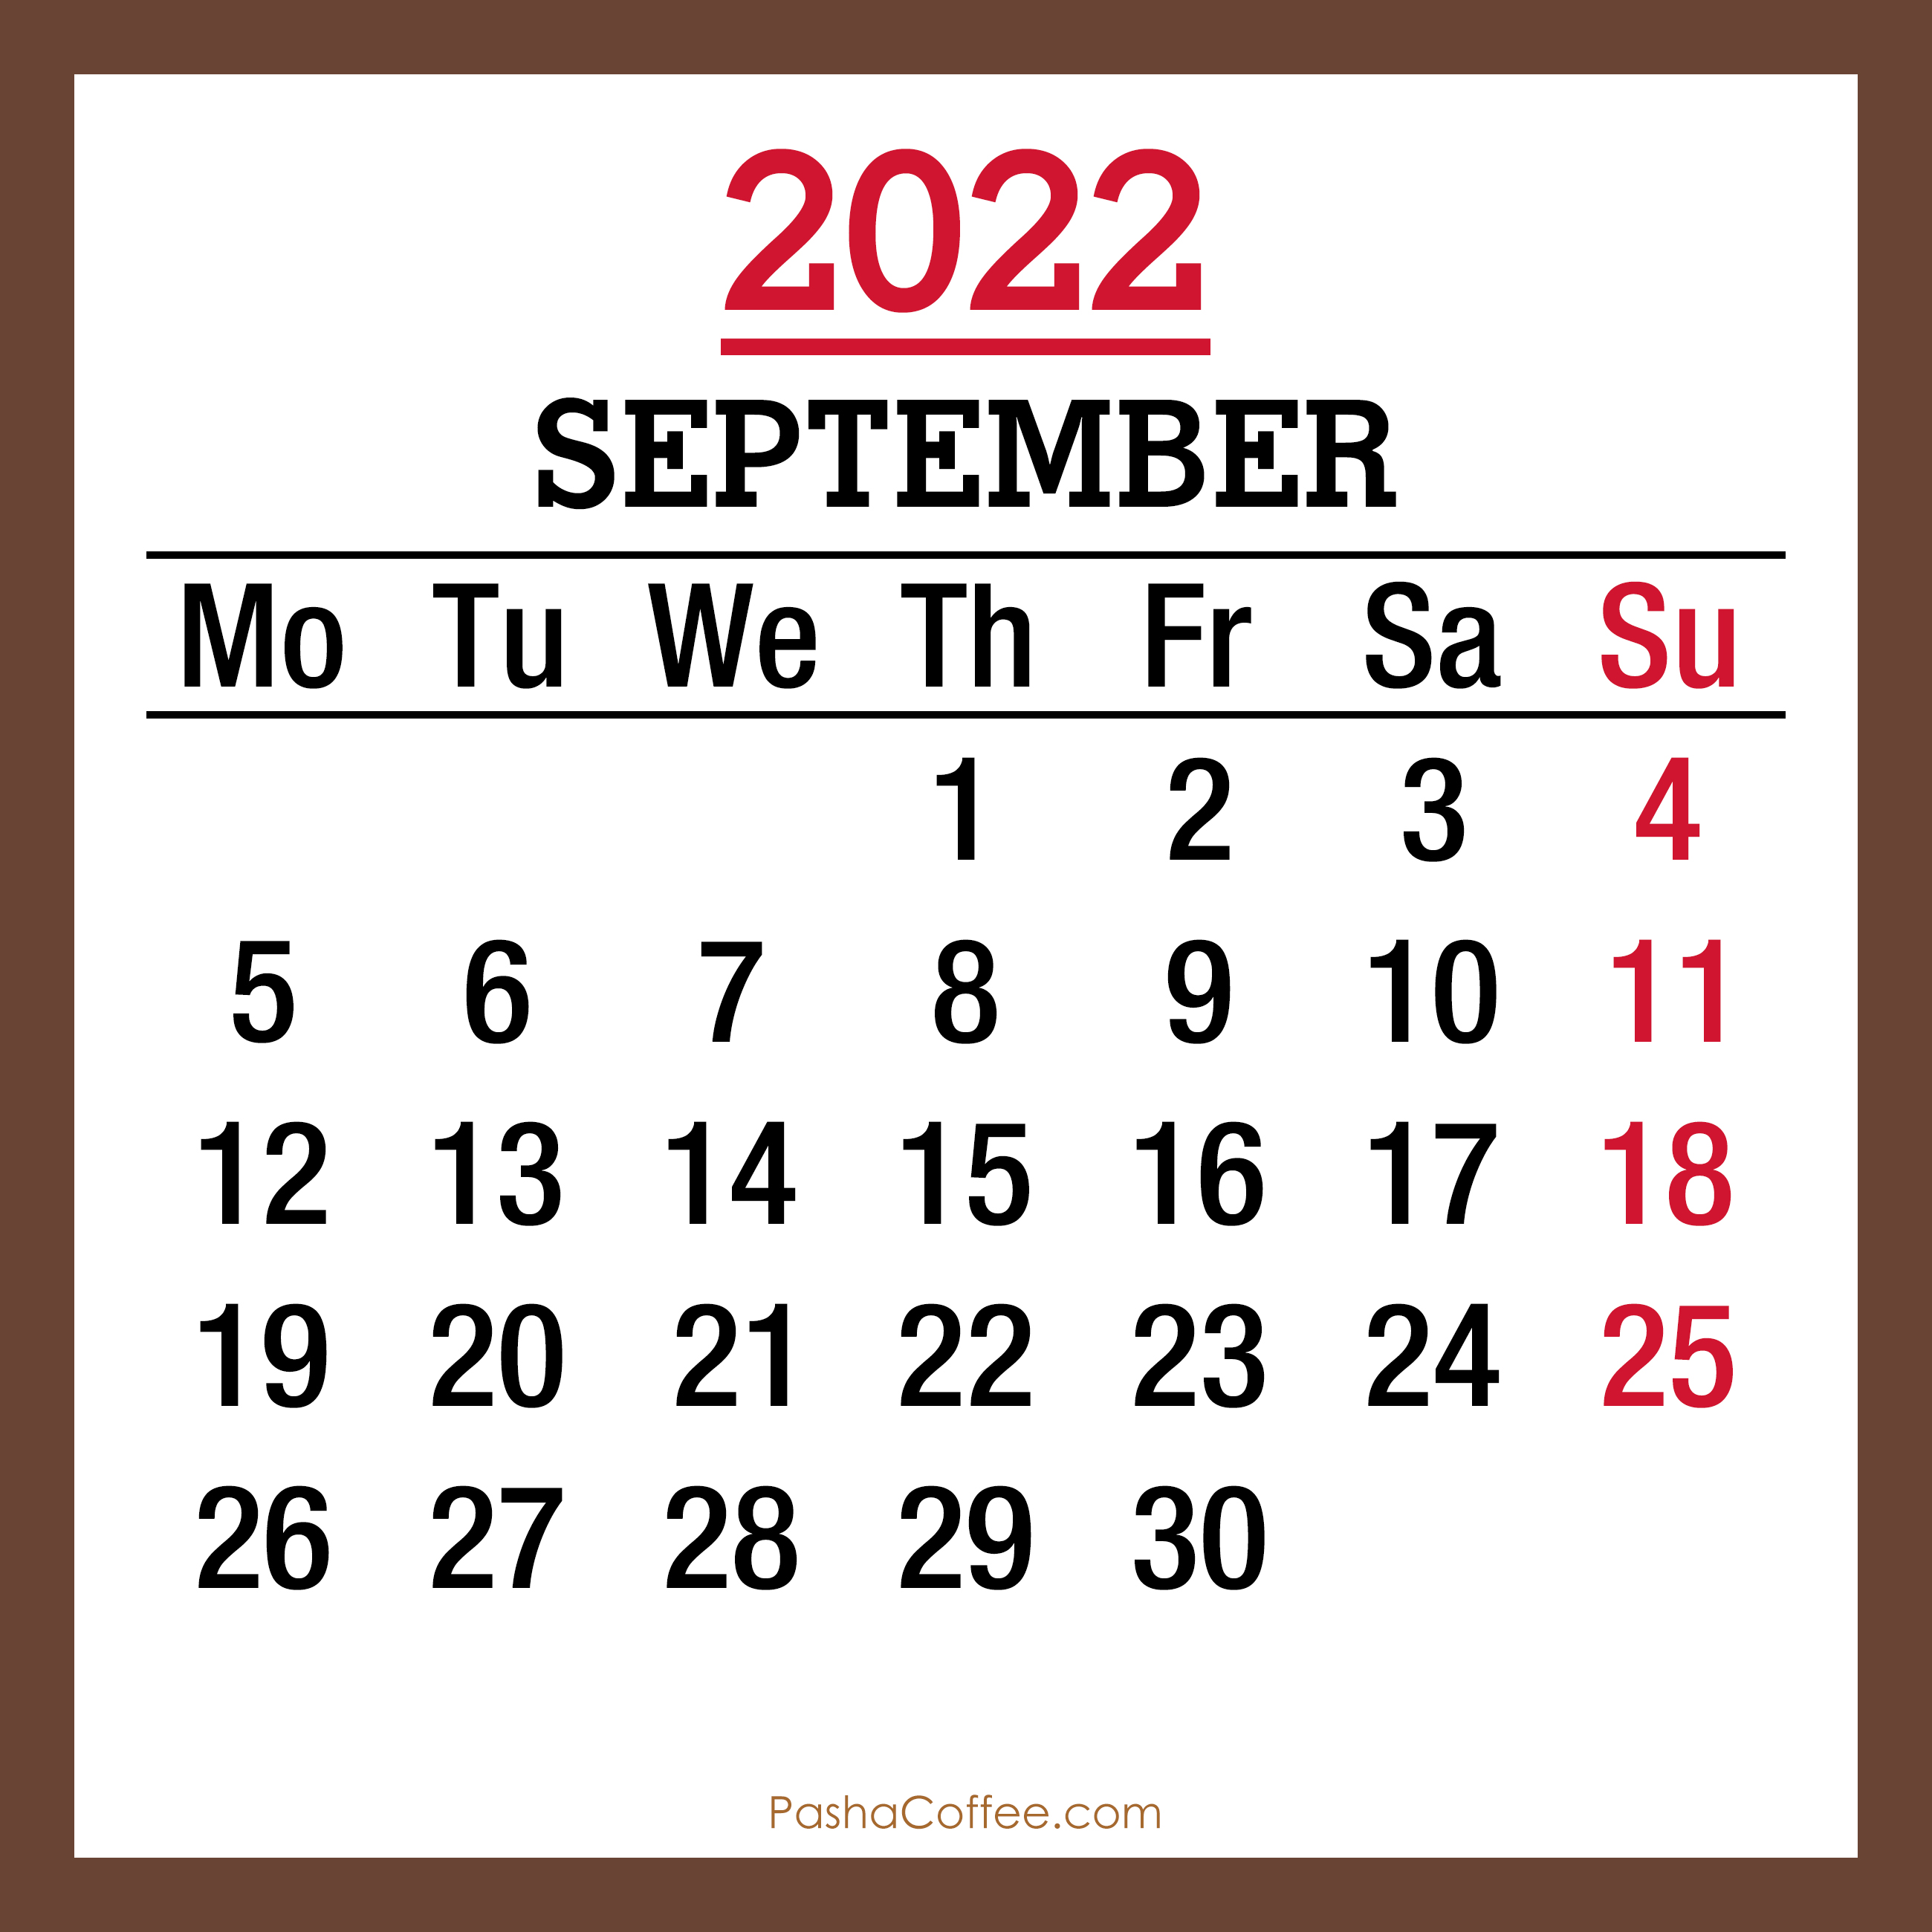 2022 Sep: Dimensions!